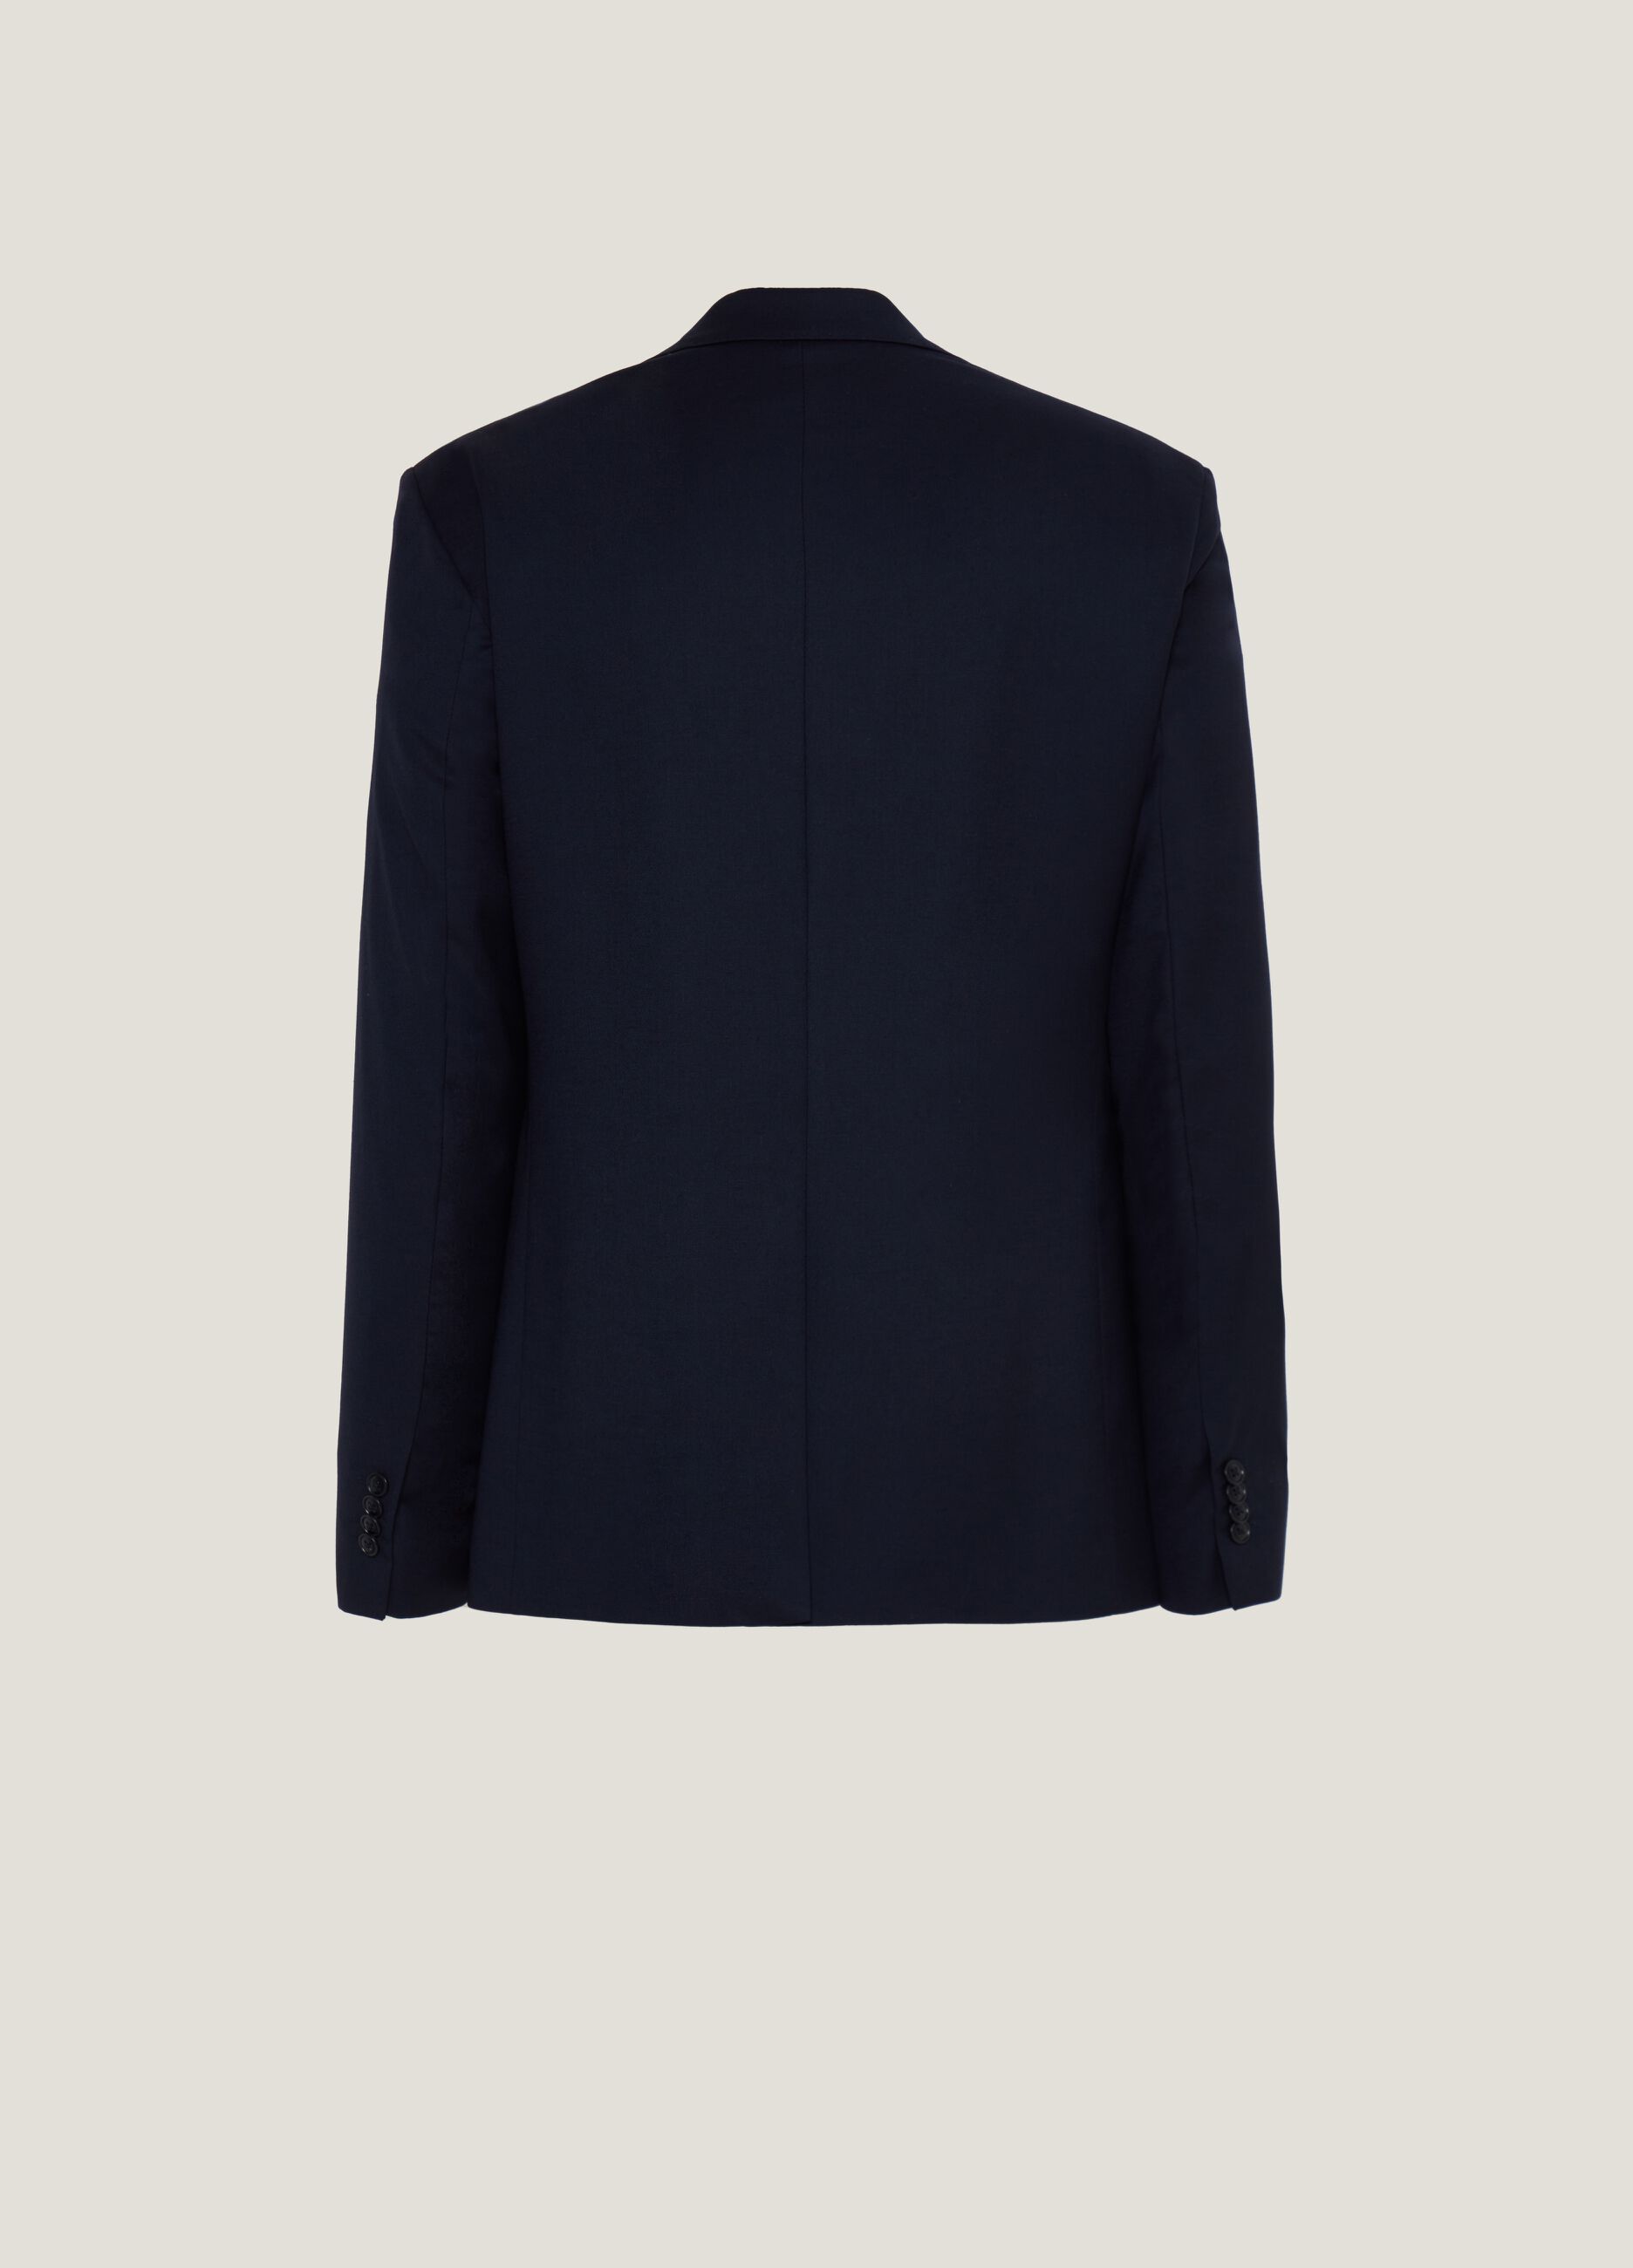 Regular-fit navy blue formal blazer